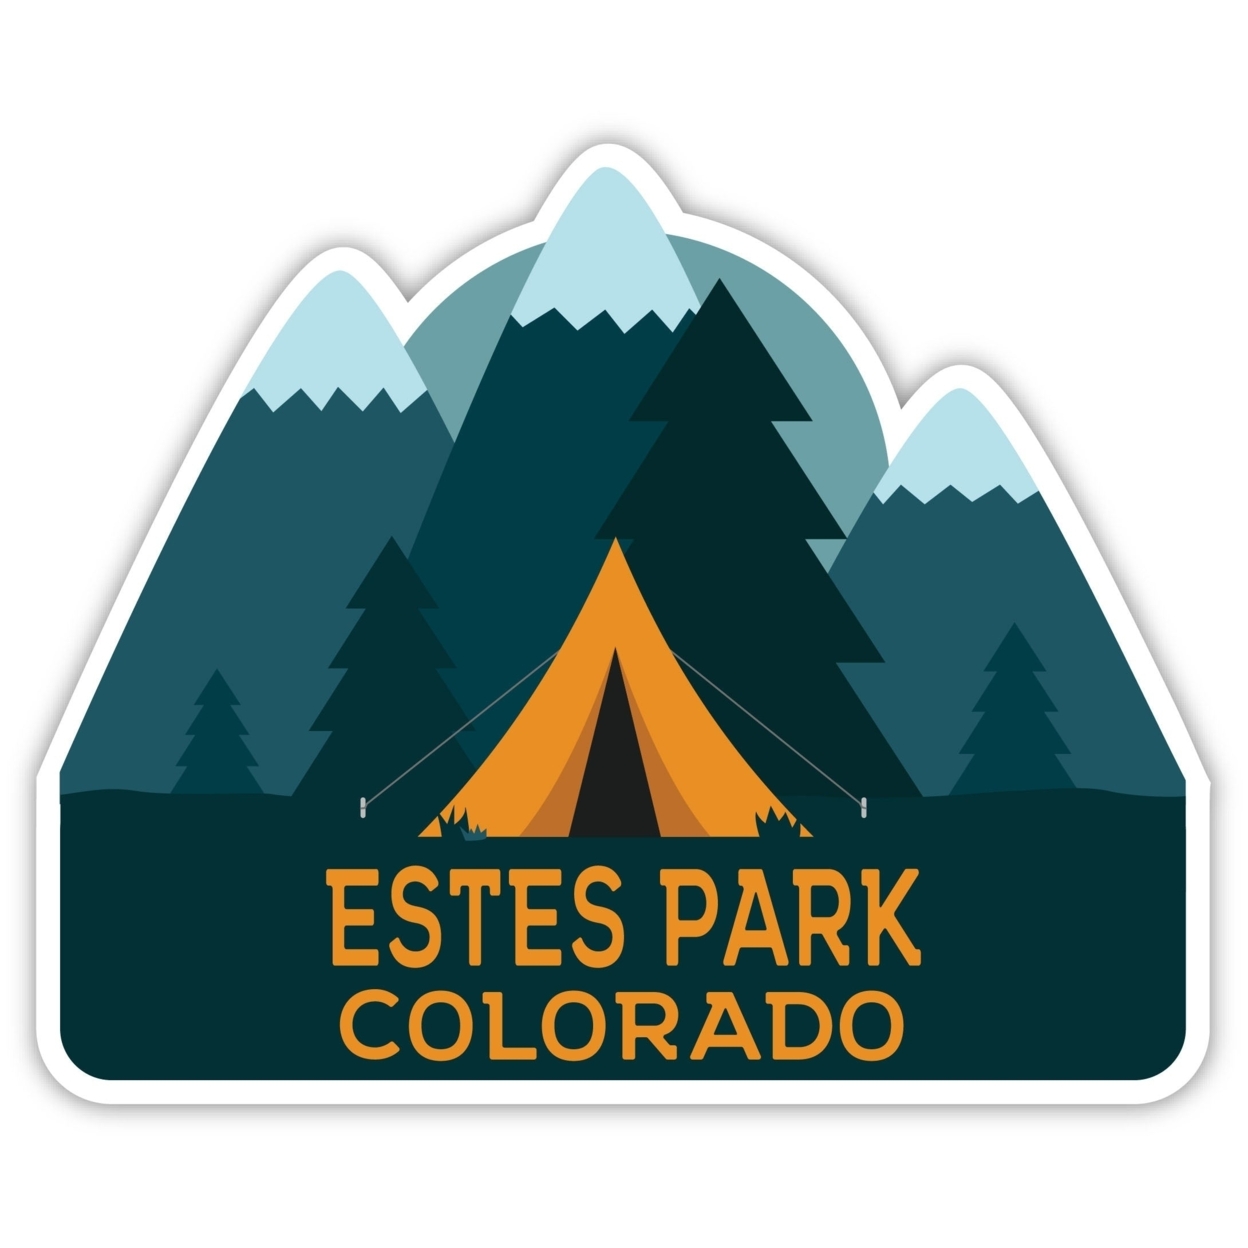 Estes Park Colorado Souvenir Decorative Stickers (Choose Theme And Size) - Single Unit, 4-Inch, Bear